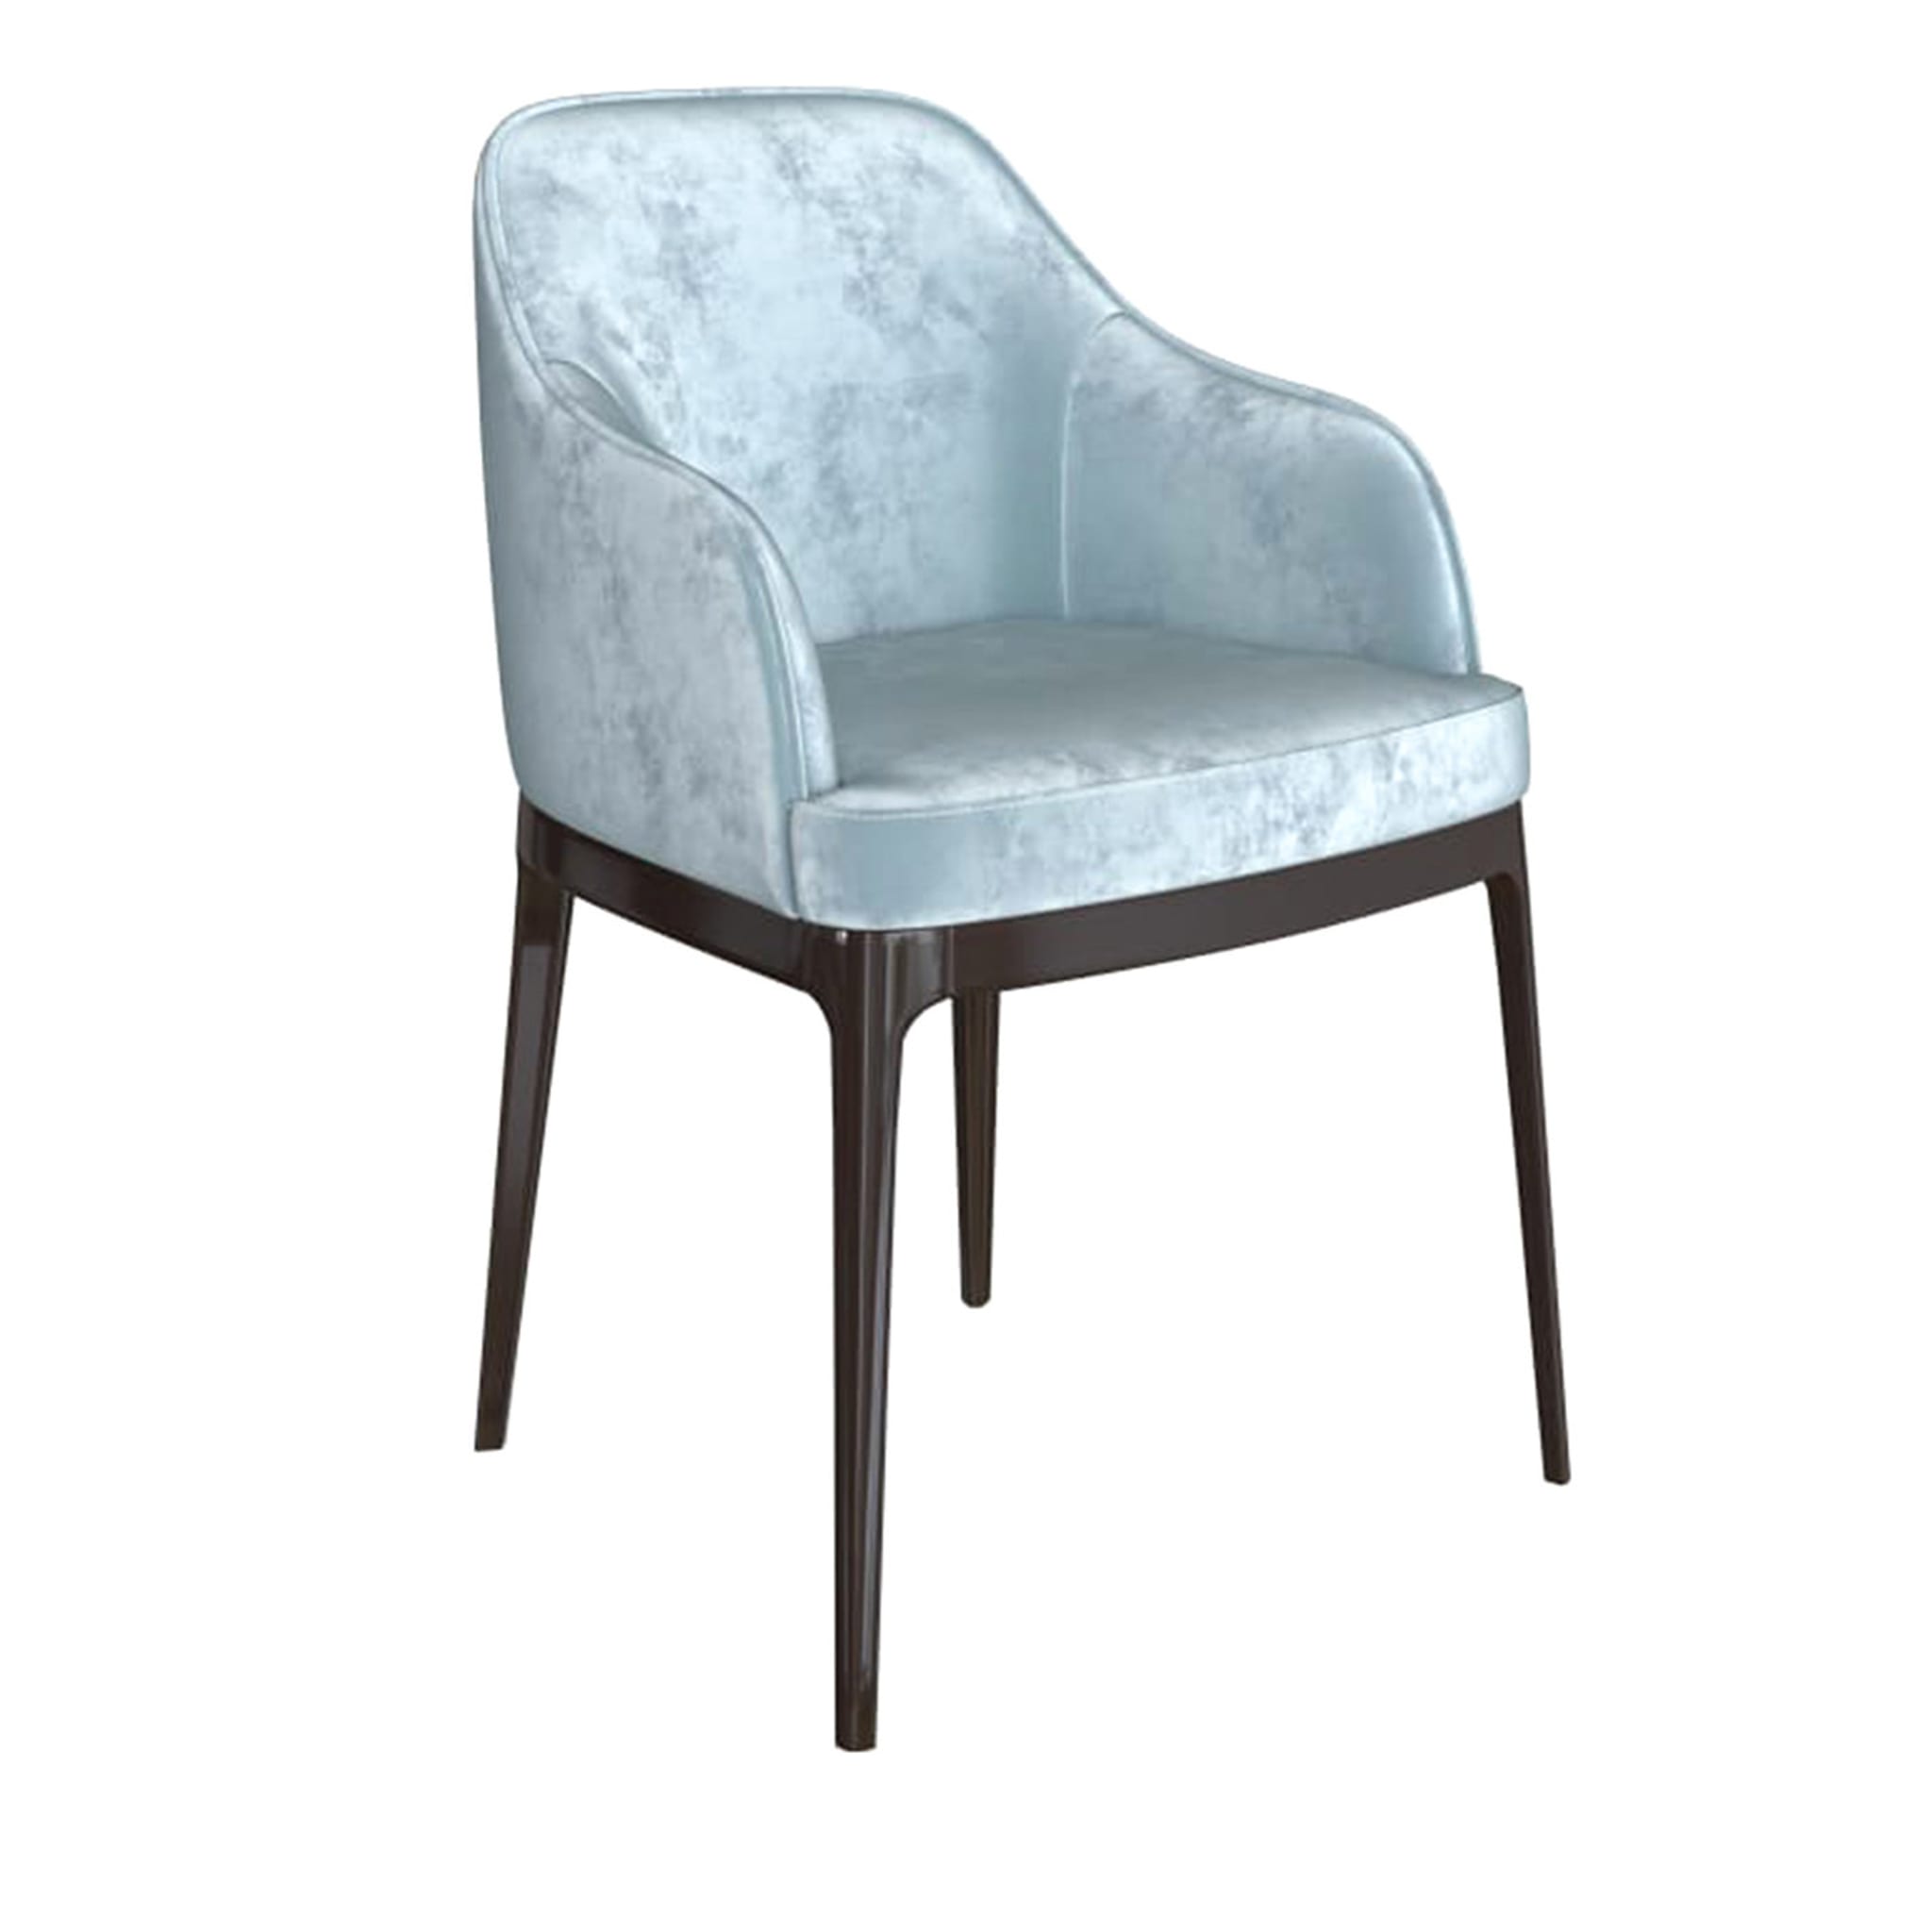 Clizia Light Blue Chair - Main view